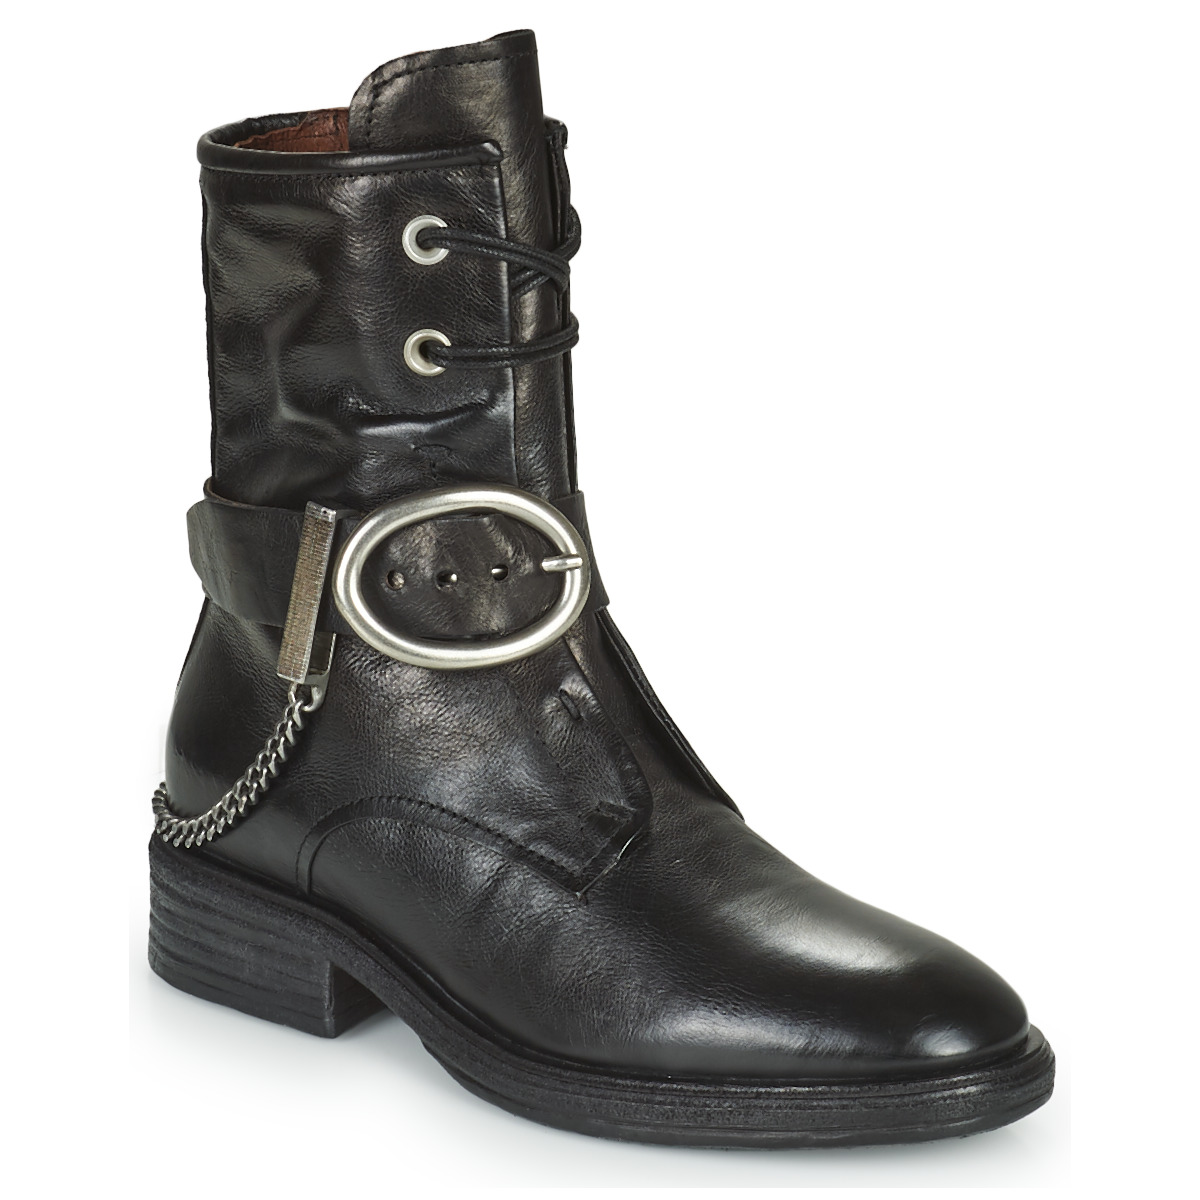 鞋子 女士 短筒靴 Airstep / A.S.98 FLOWER BUCKLE 黑色